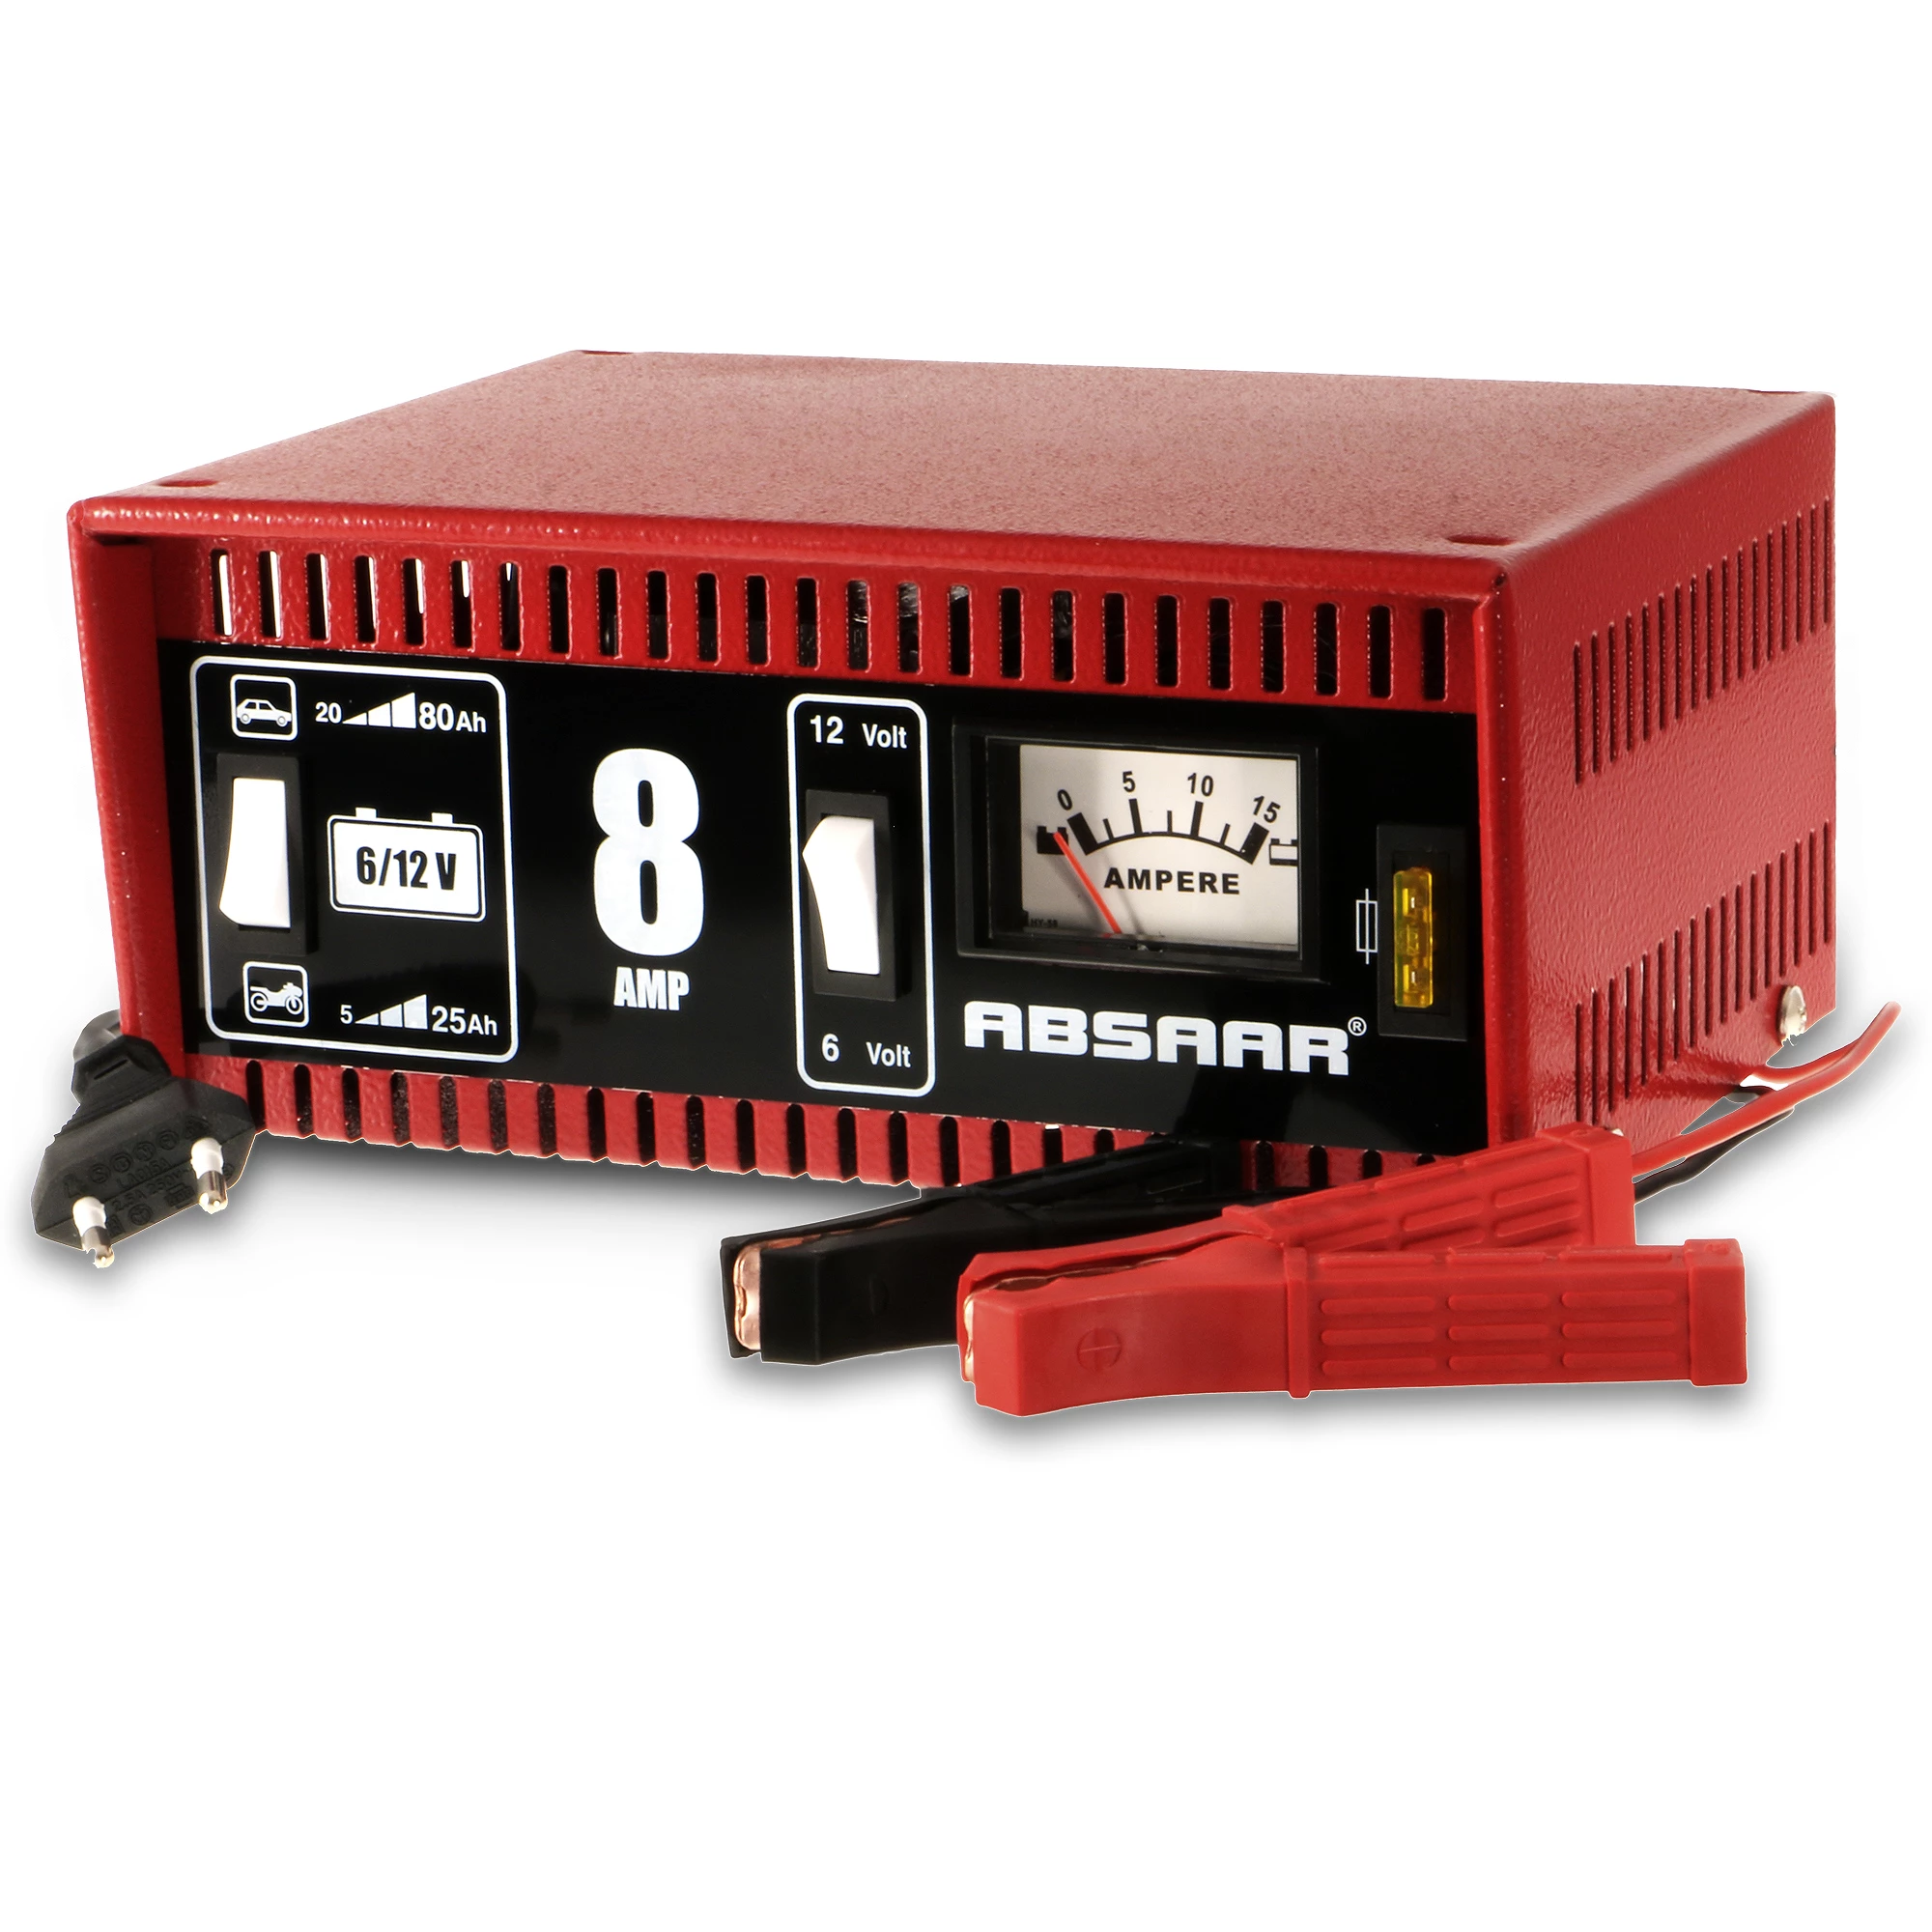 Absaar Batterieladegerät ohne Starthilfe - 6/12 Volt - 8 Ampere 0110803106  günstig online kaufen